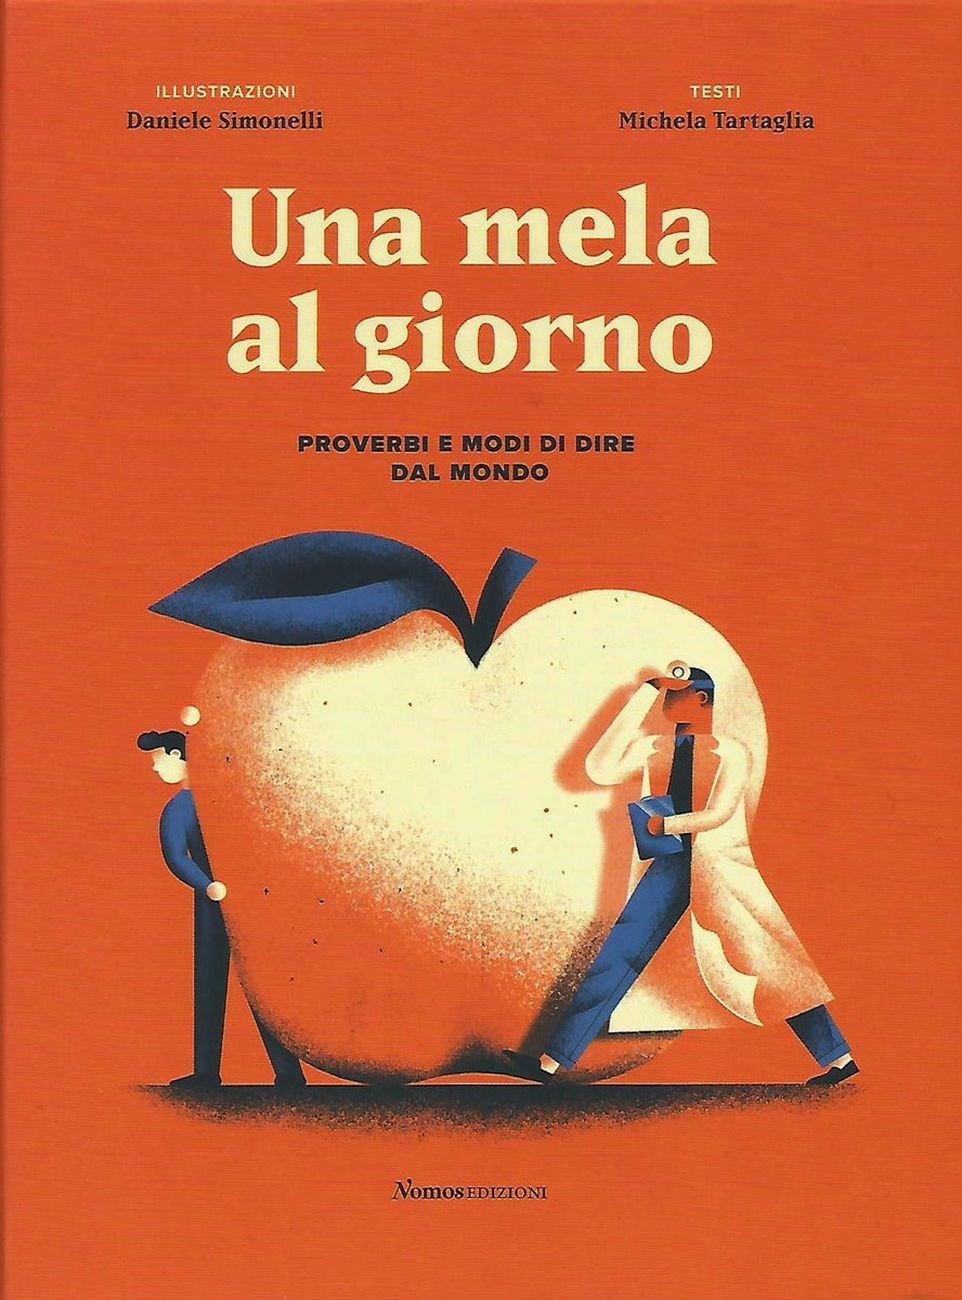 Michela Tartaglia & Daniele Simonelli – Una mela al giorno (Nomos, Busto Arsizio 2020)